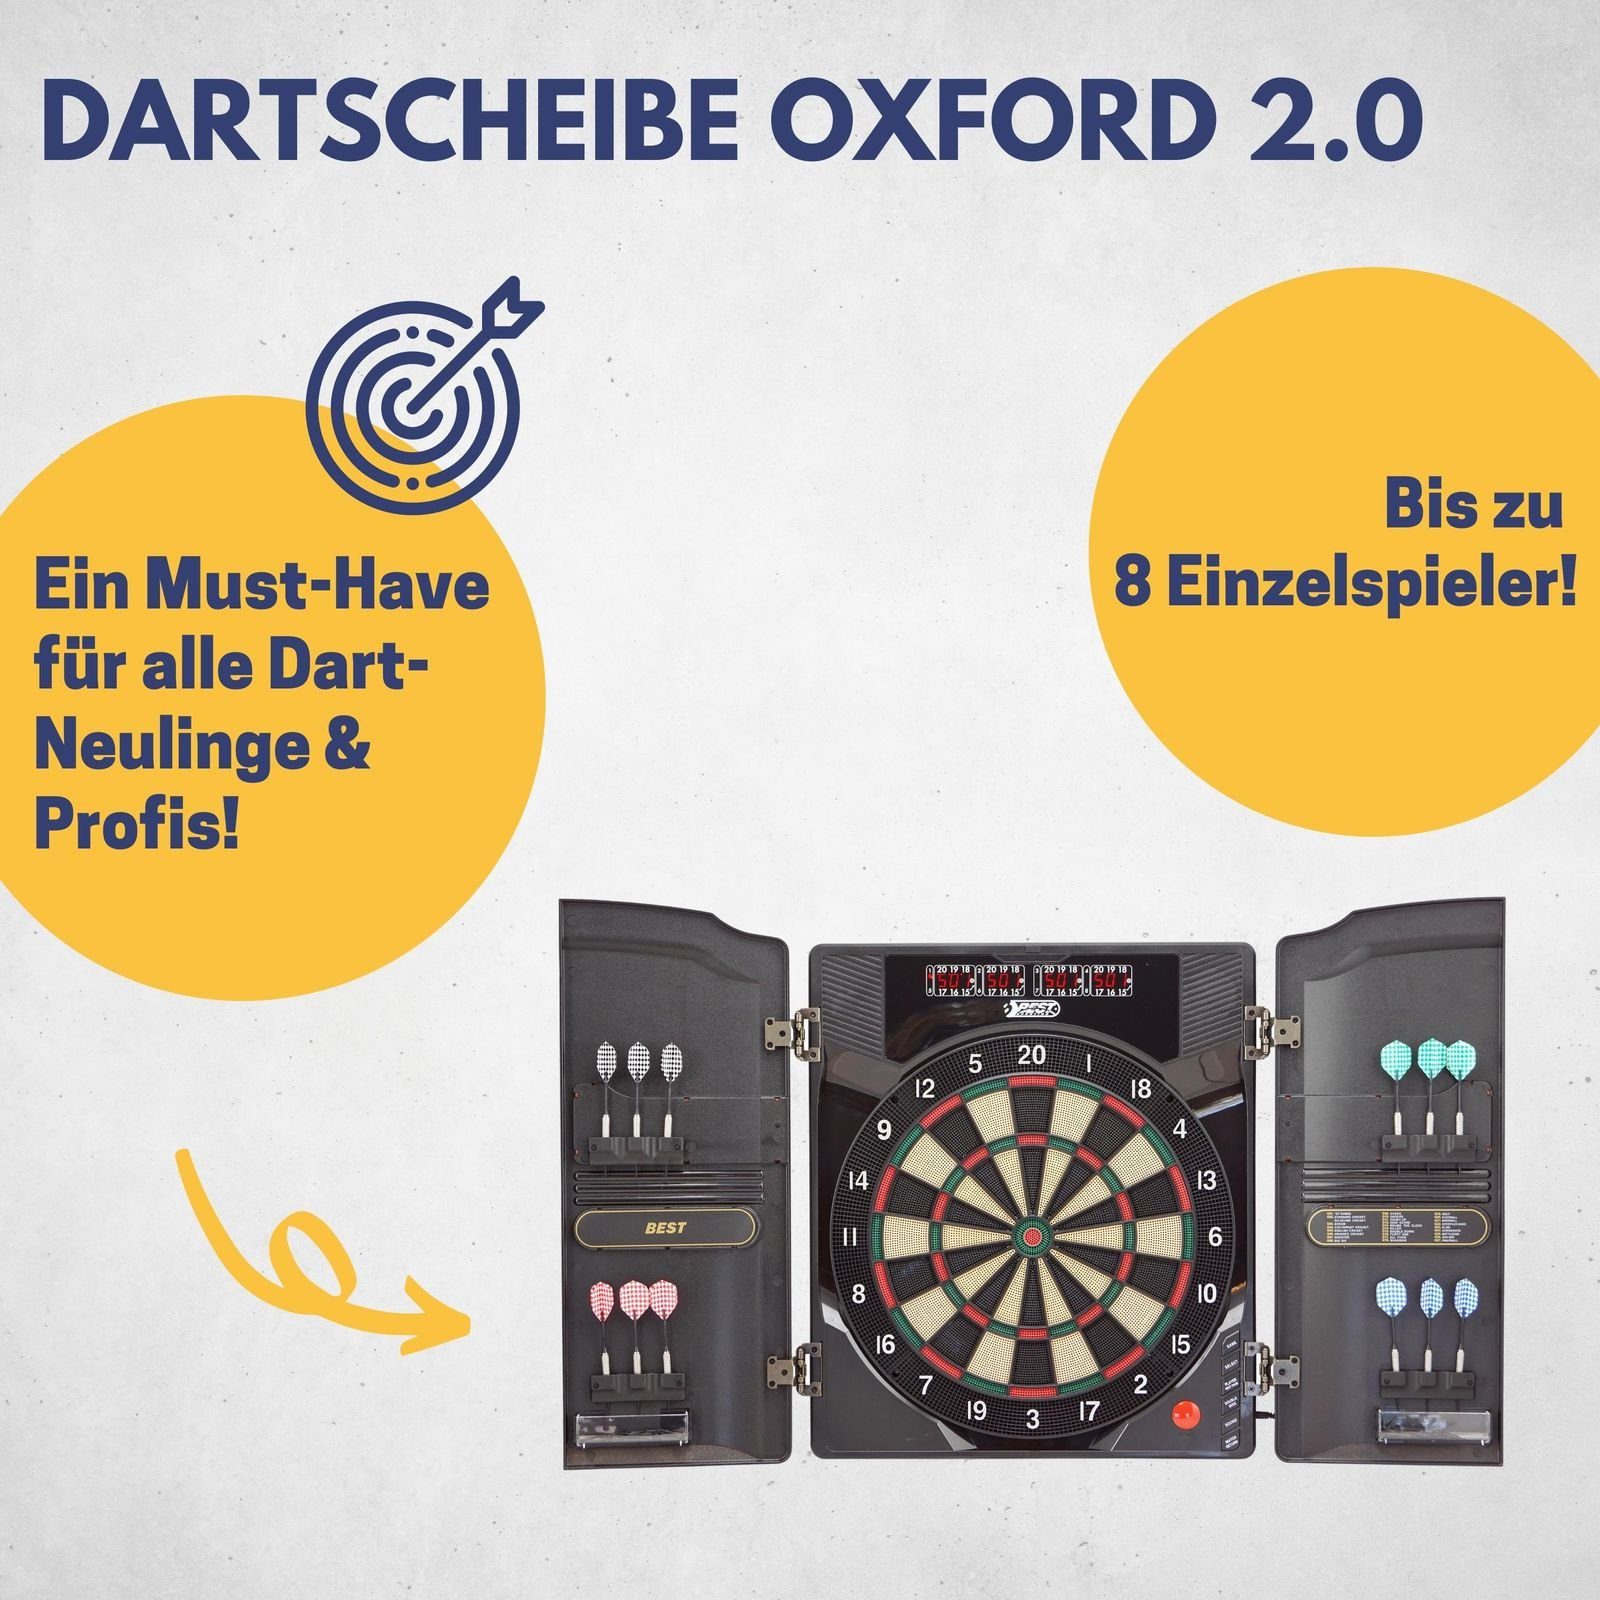 B Best Sporting Dartautomat mit Dartboard Kabinett 2.0 mit Walnuss-Optik elektronische LED-Anzeige, Oxford Dartscheibe